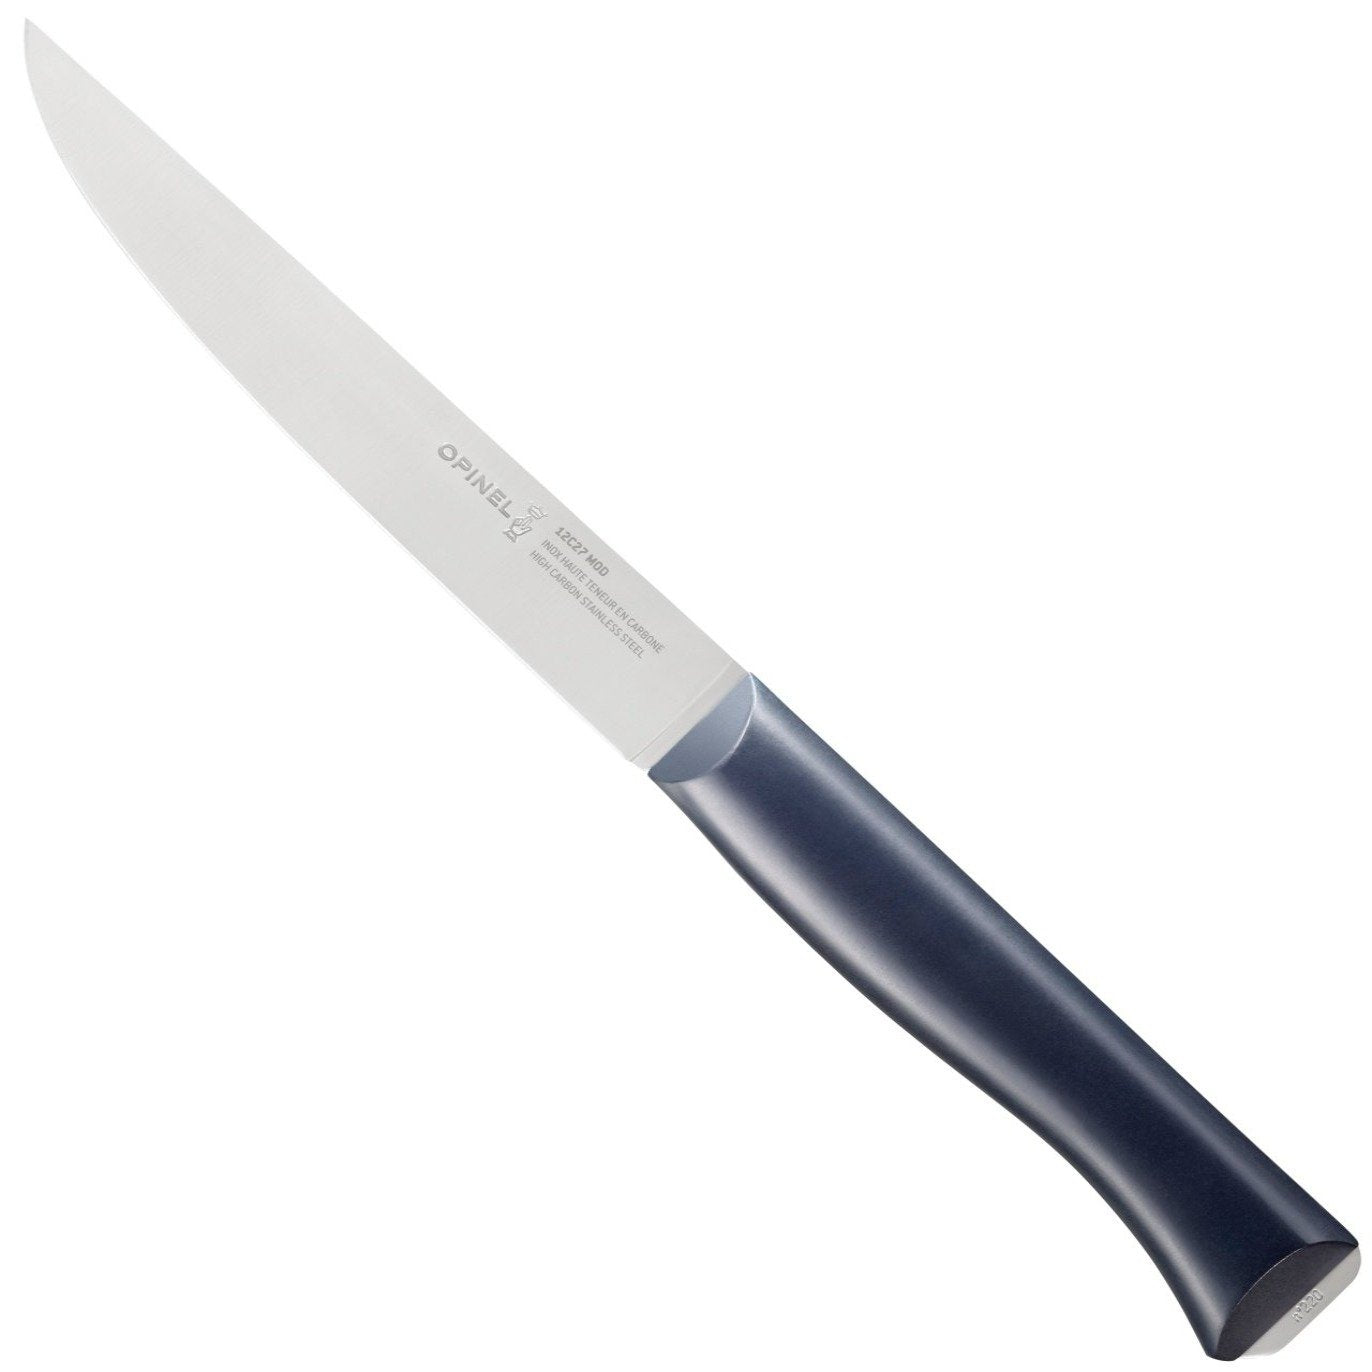 Opinel N.220 Intempora Carving Knife + Free Sharpener